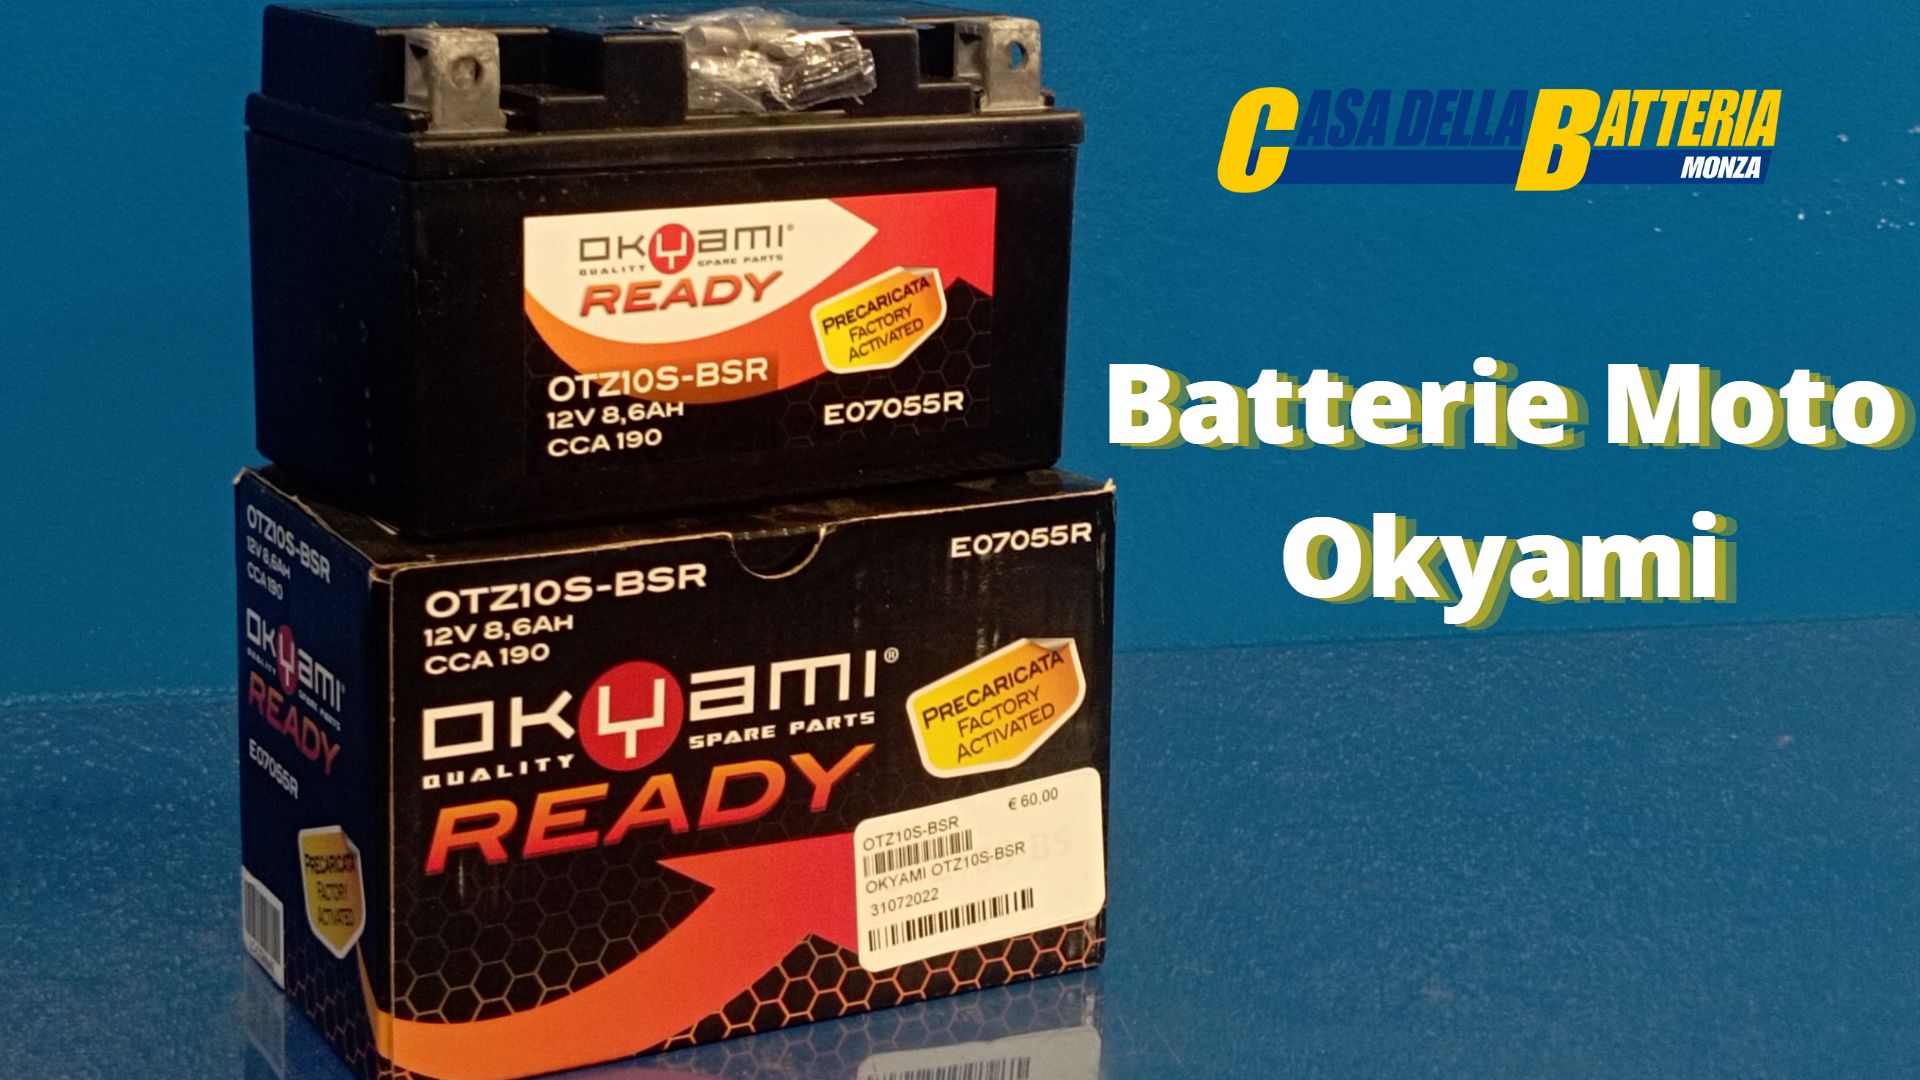 Batterie Moto di produzione Yuasa: la linea Okyami – I consigli di Andrea